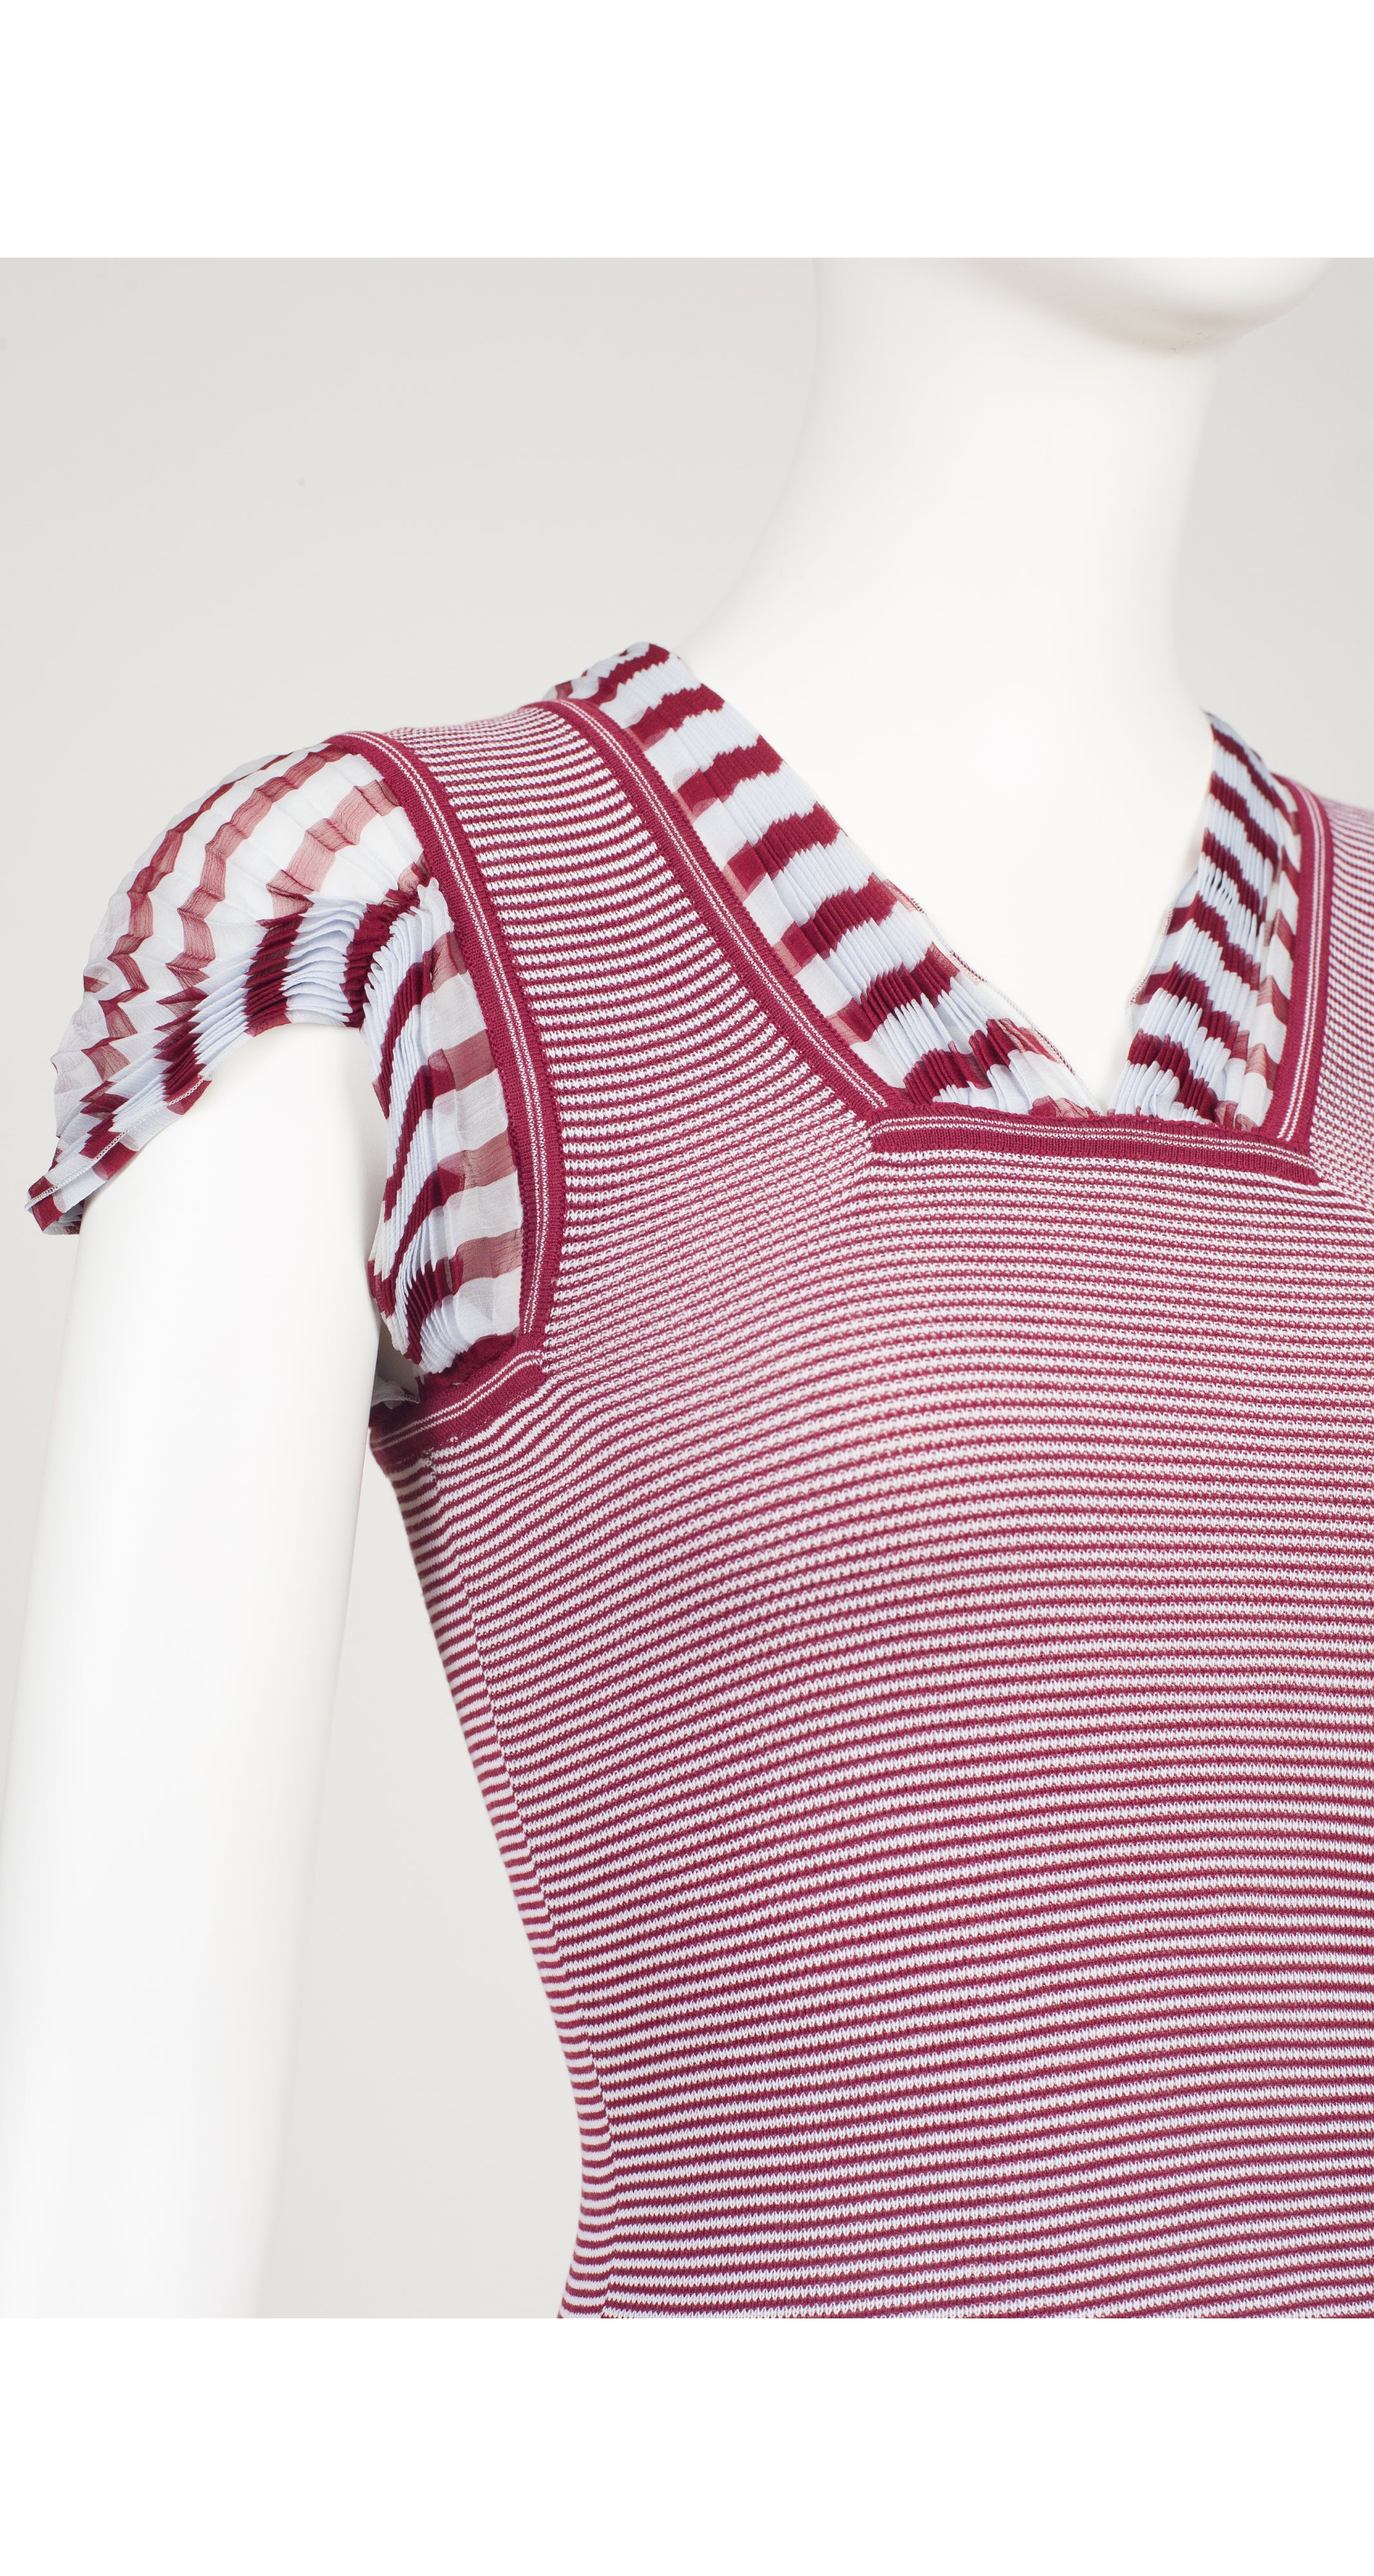 2000s Pleated Silk Chiffon Trim Striped Knit Top